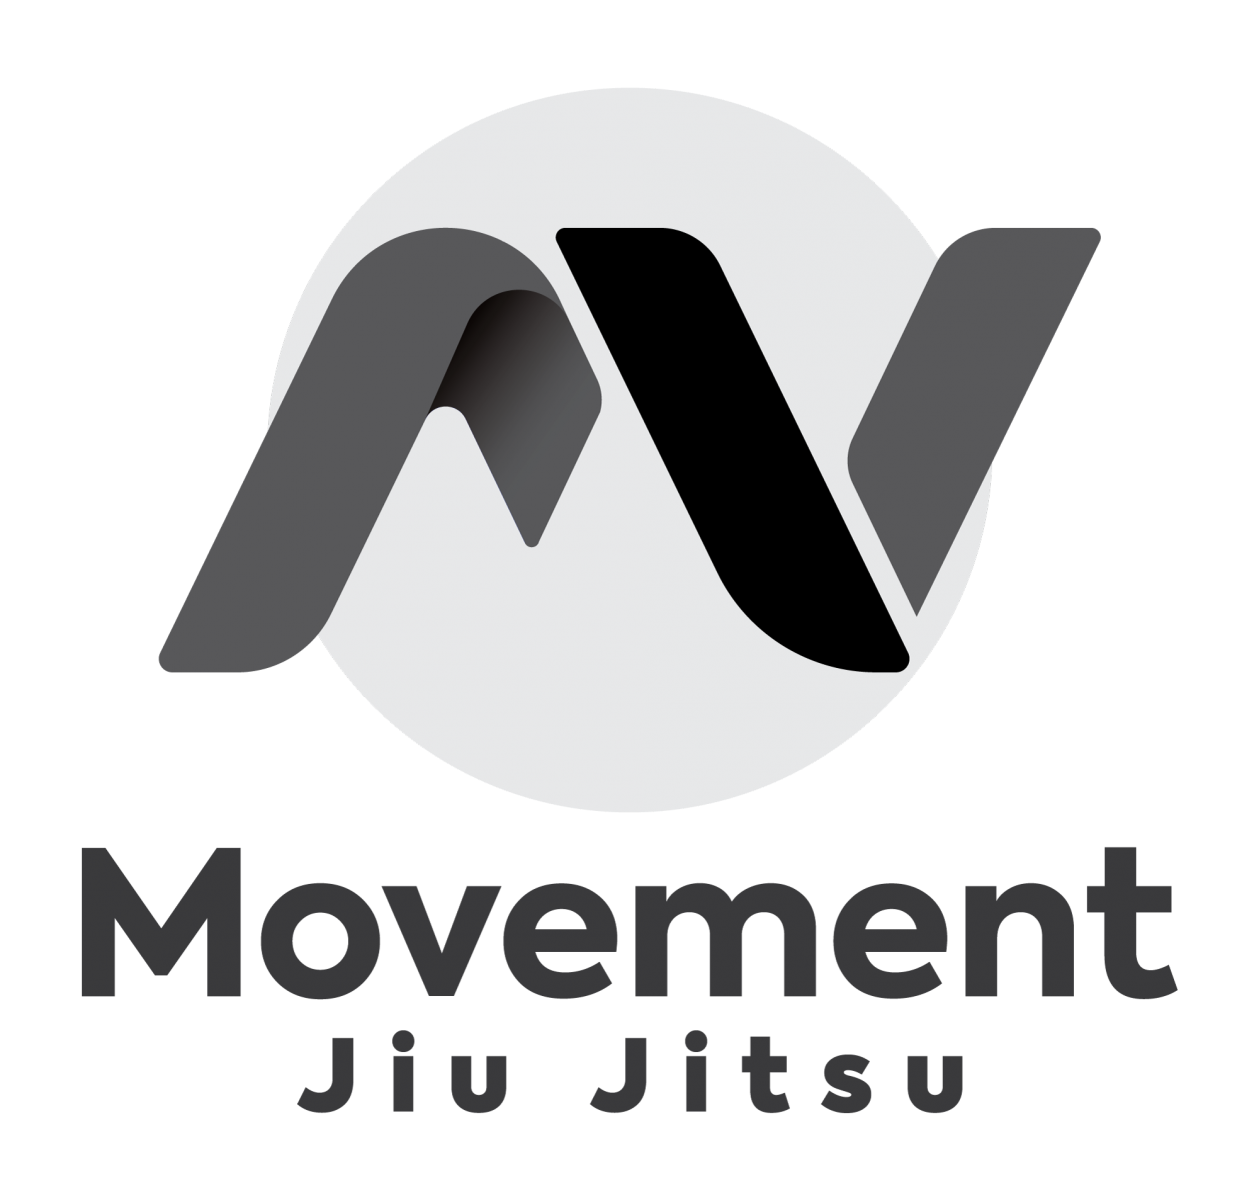 movement jujitsu